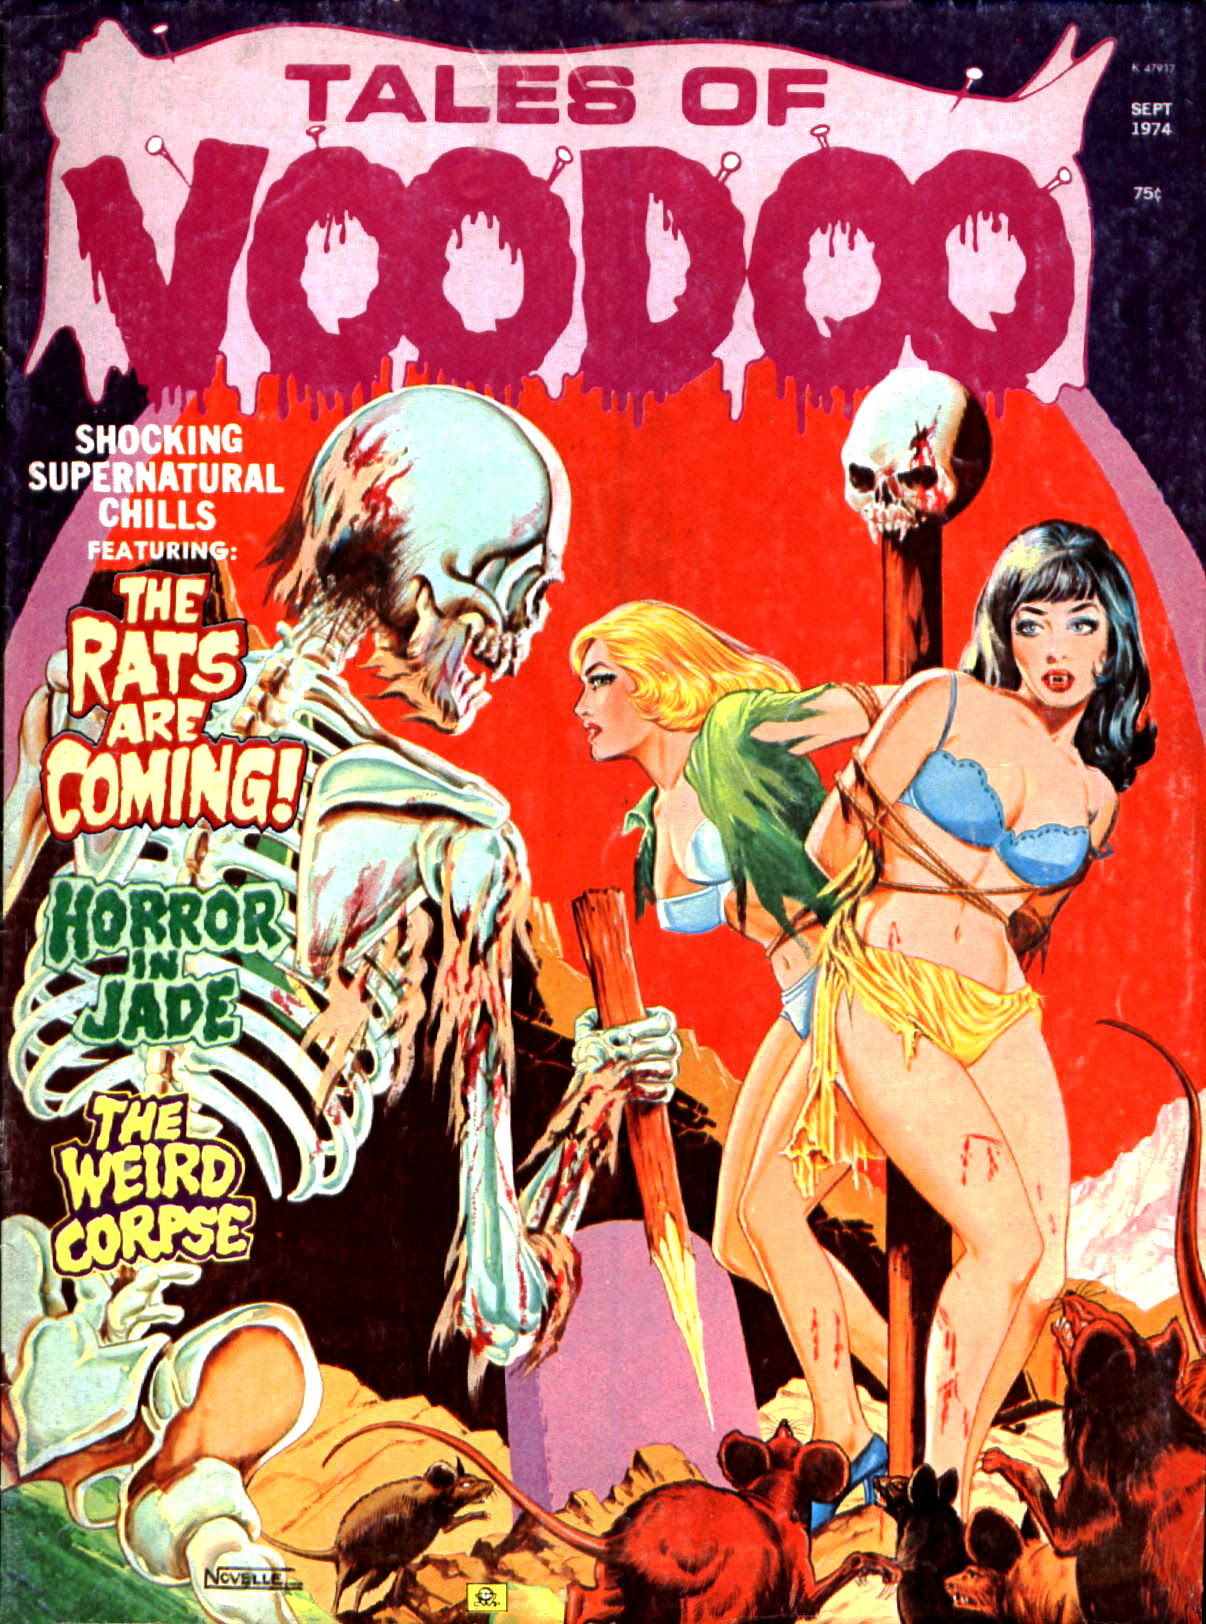 Tales of Voodoo Vol. 7 #5 (Eerie Publications 1974